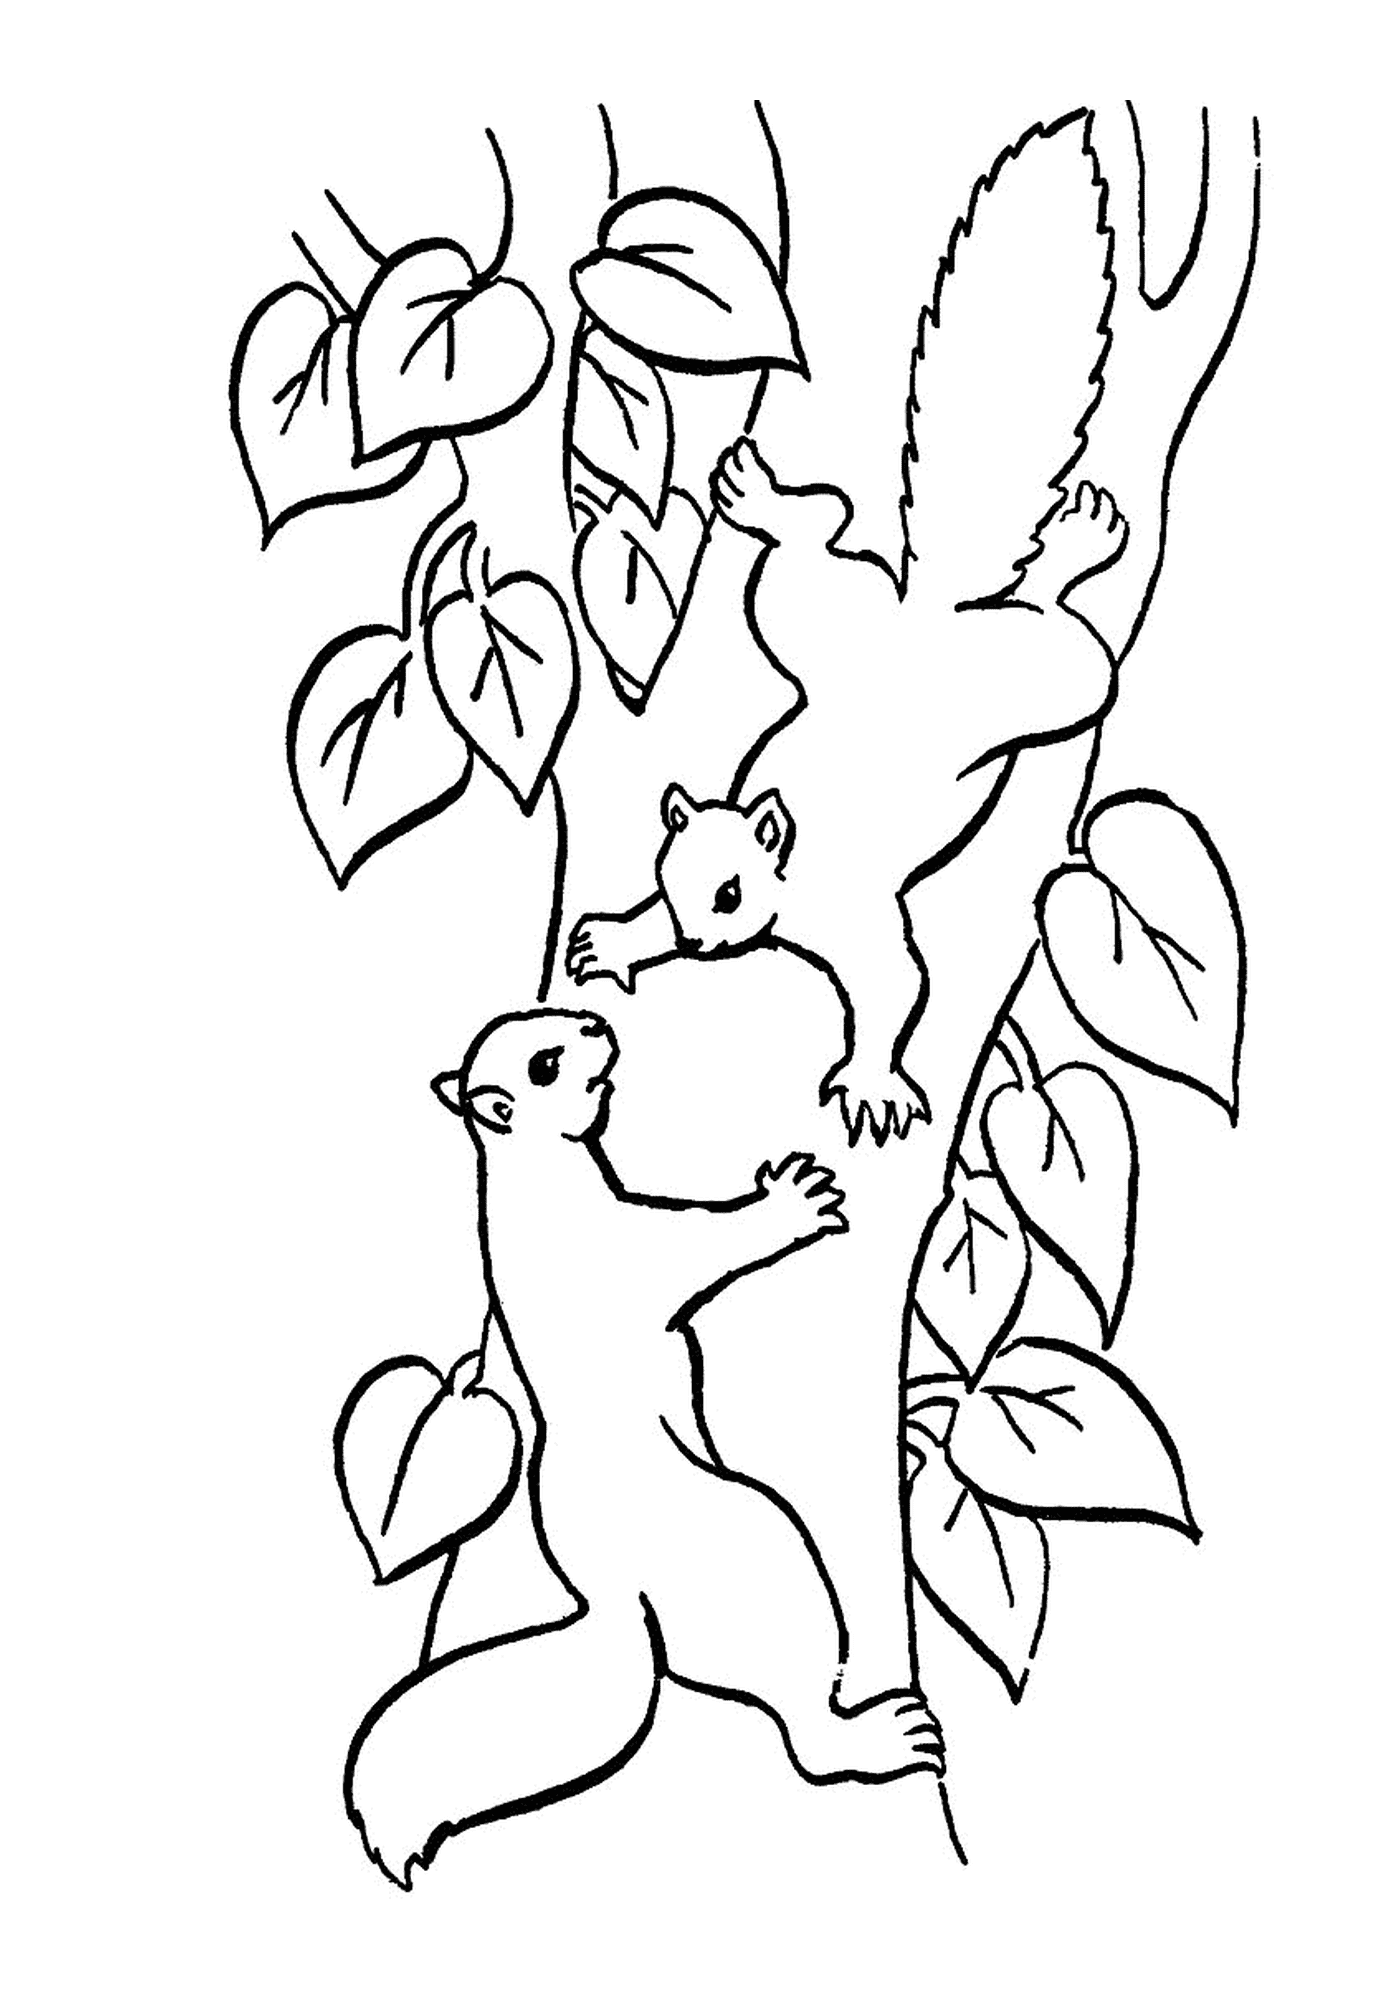  Dos ardillas en una rama de árbol 